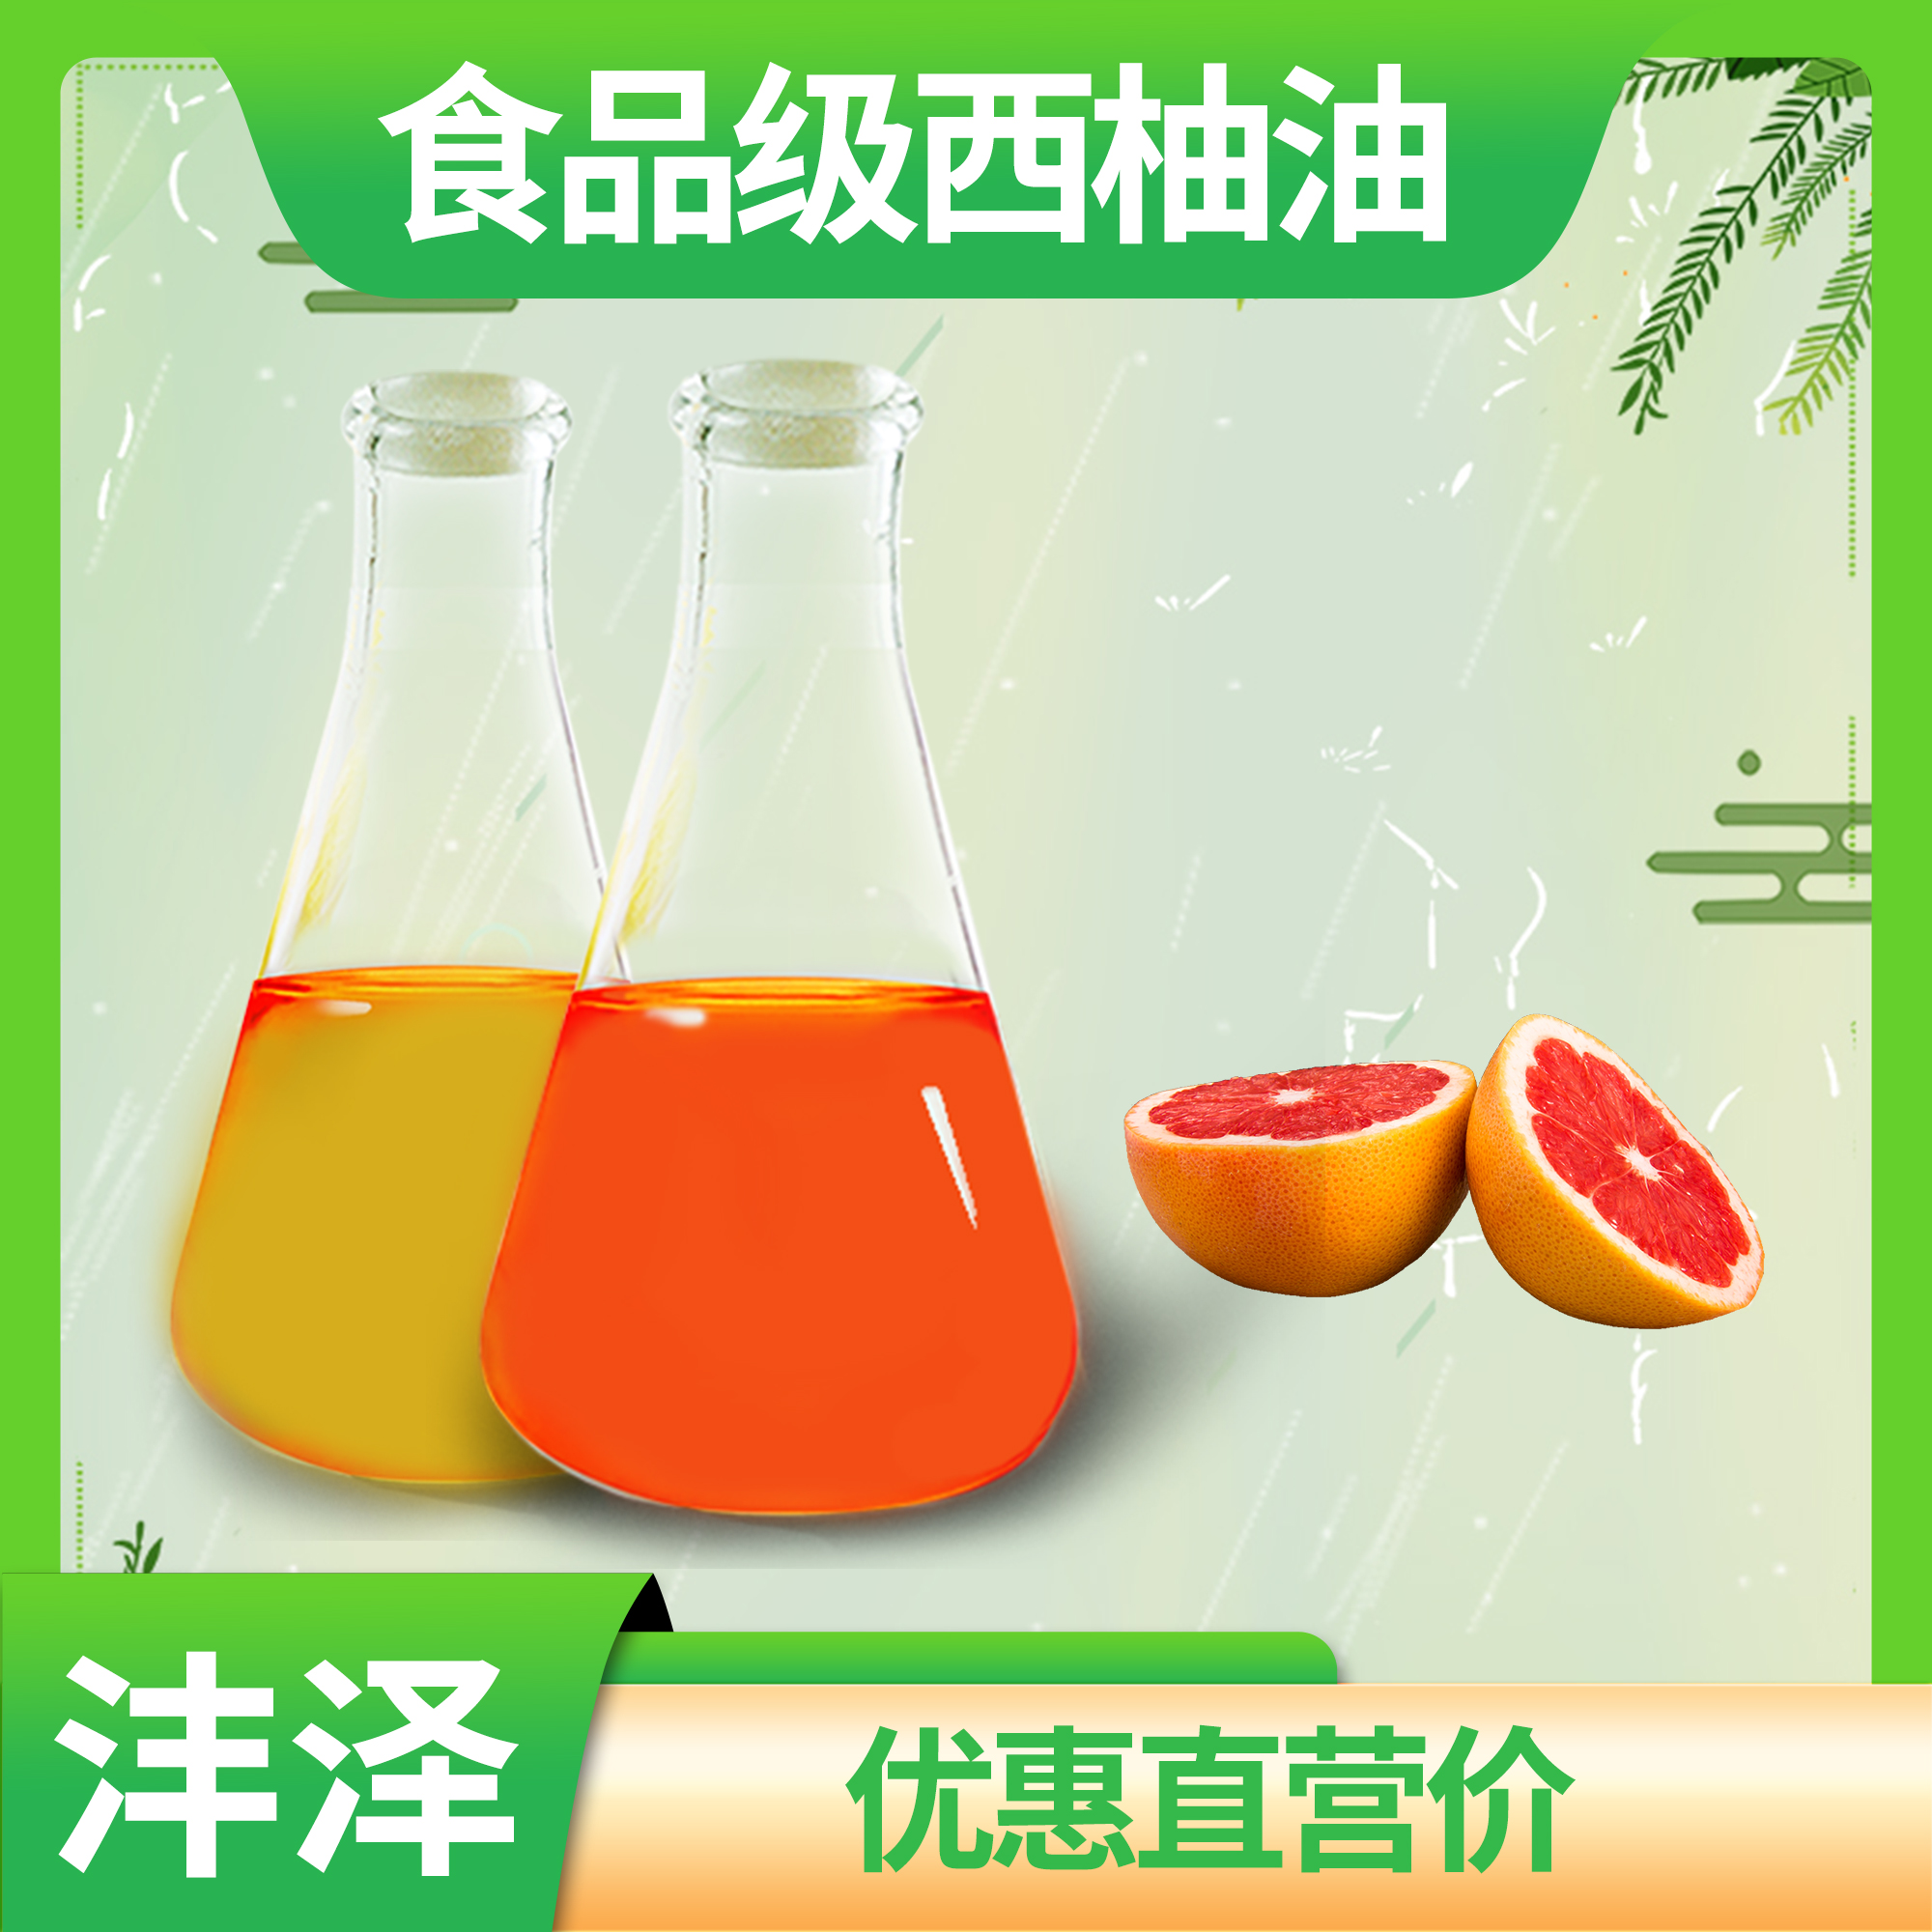 圆柚油味道 西柚植物卸妆油原料 食品级安全保障【沣泽】